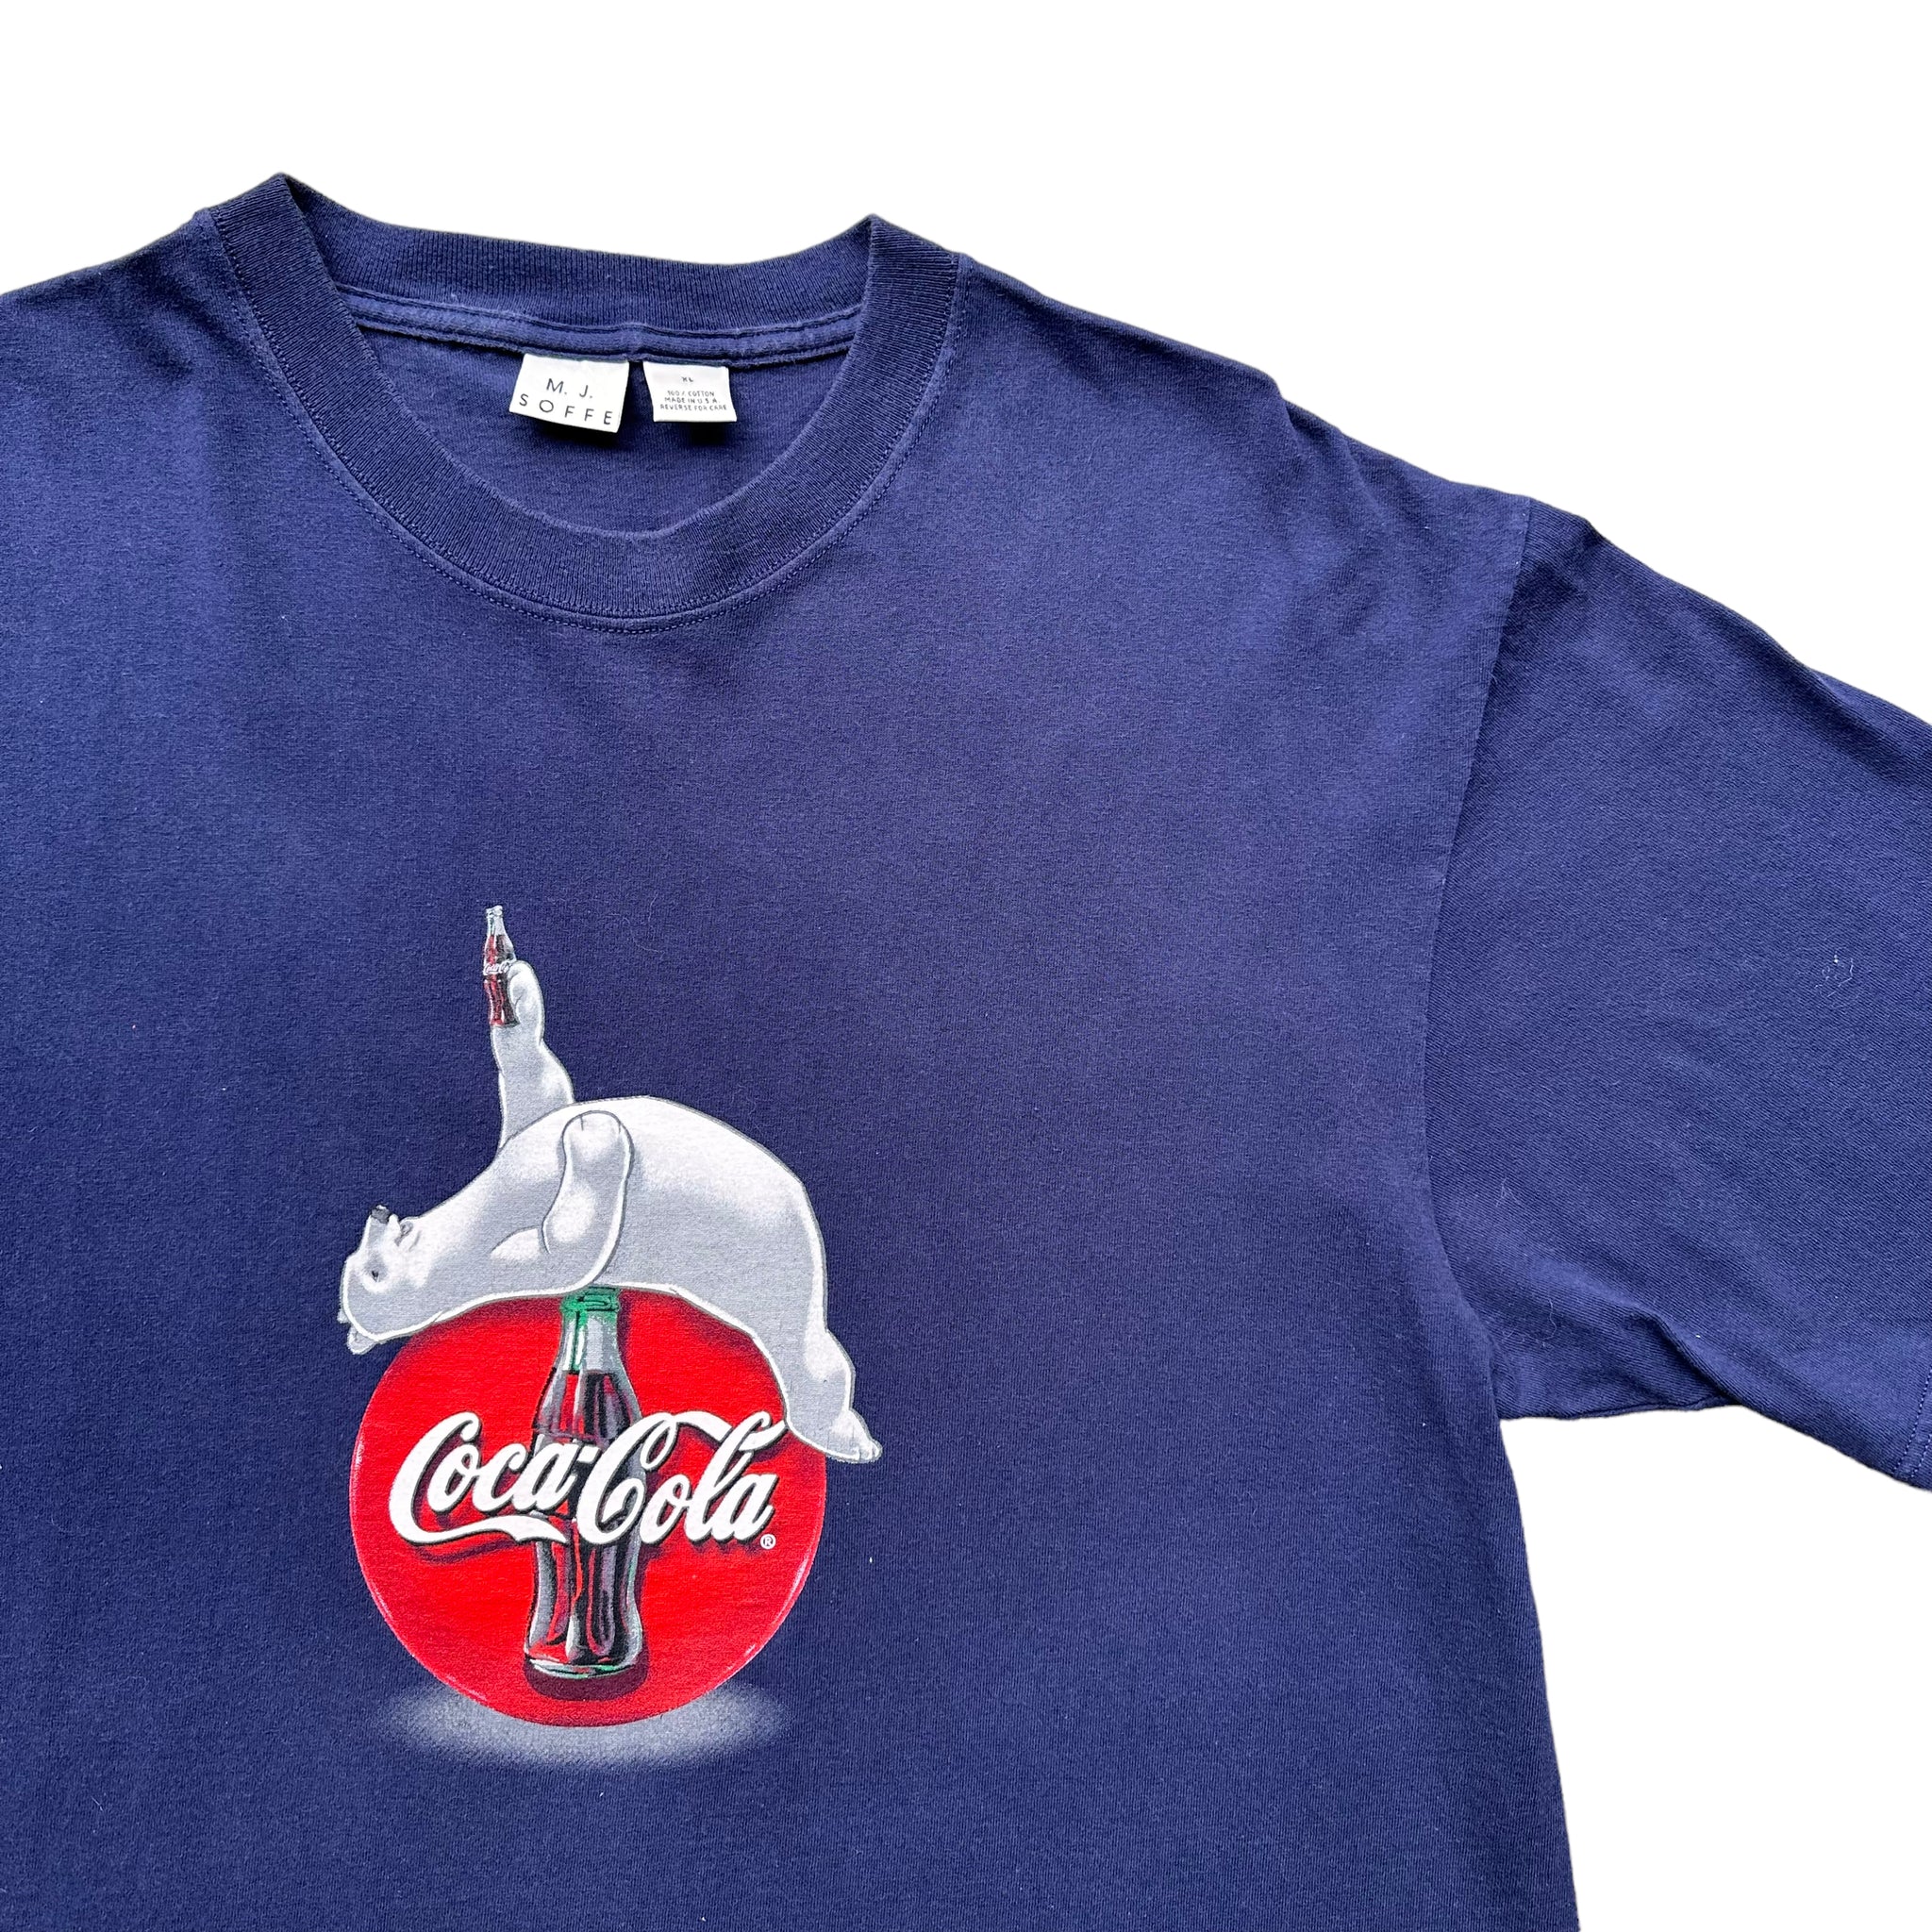 90s Coke best tee XL